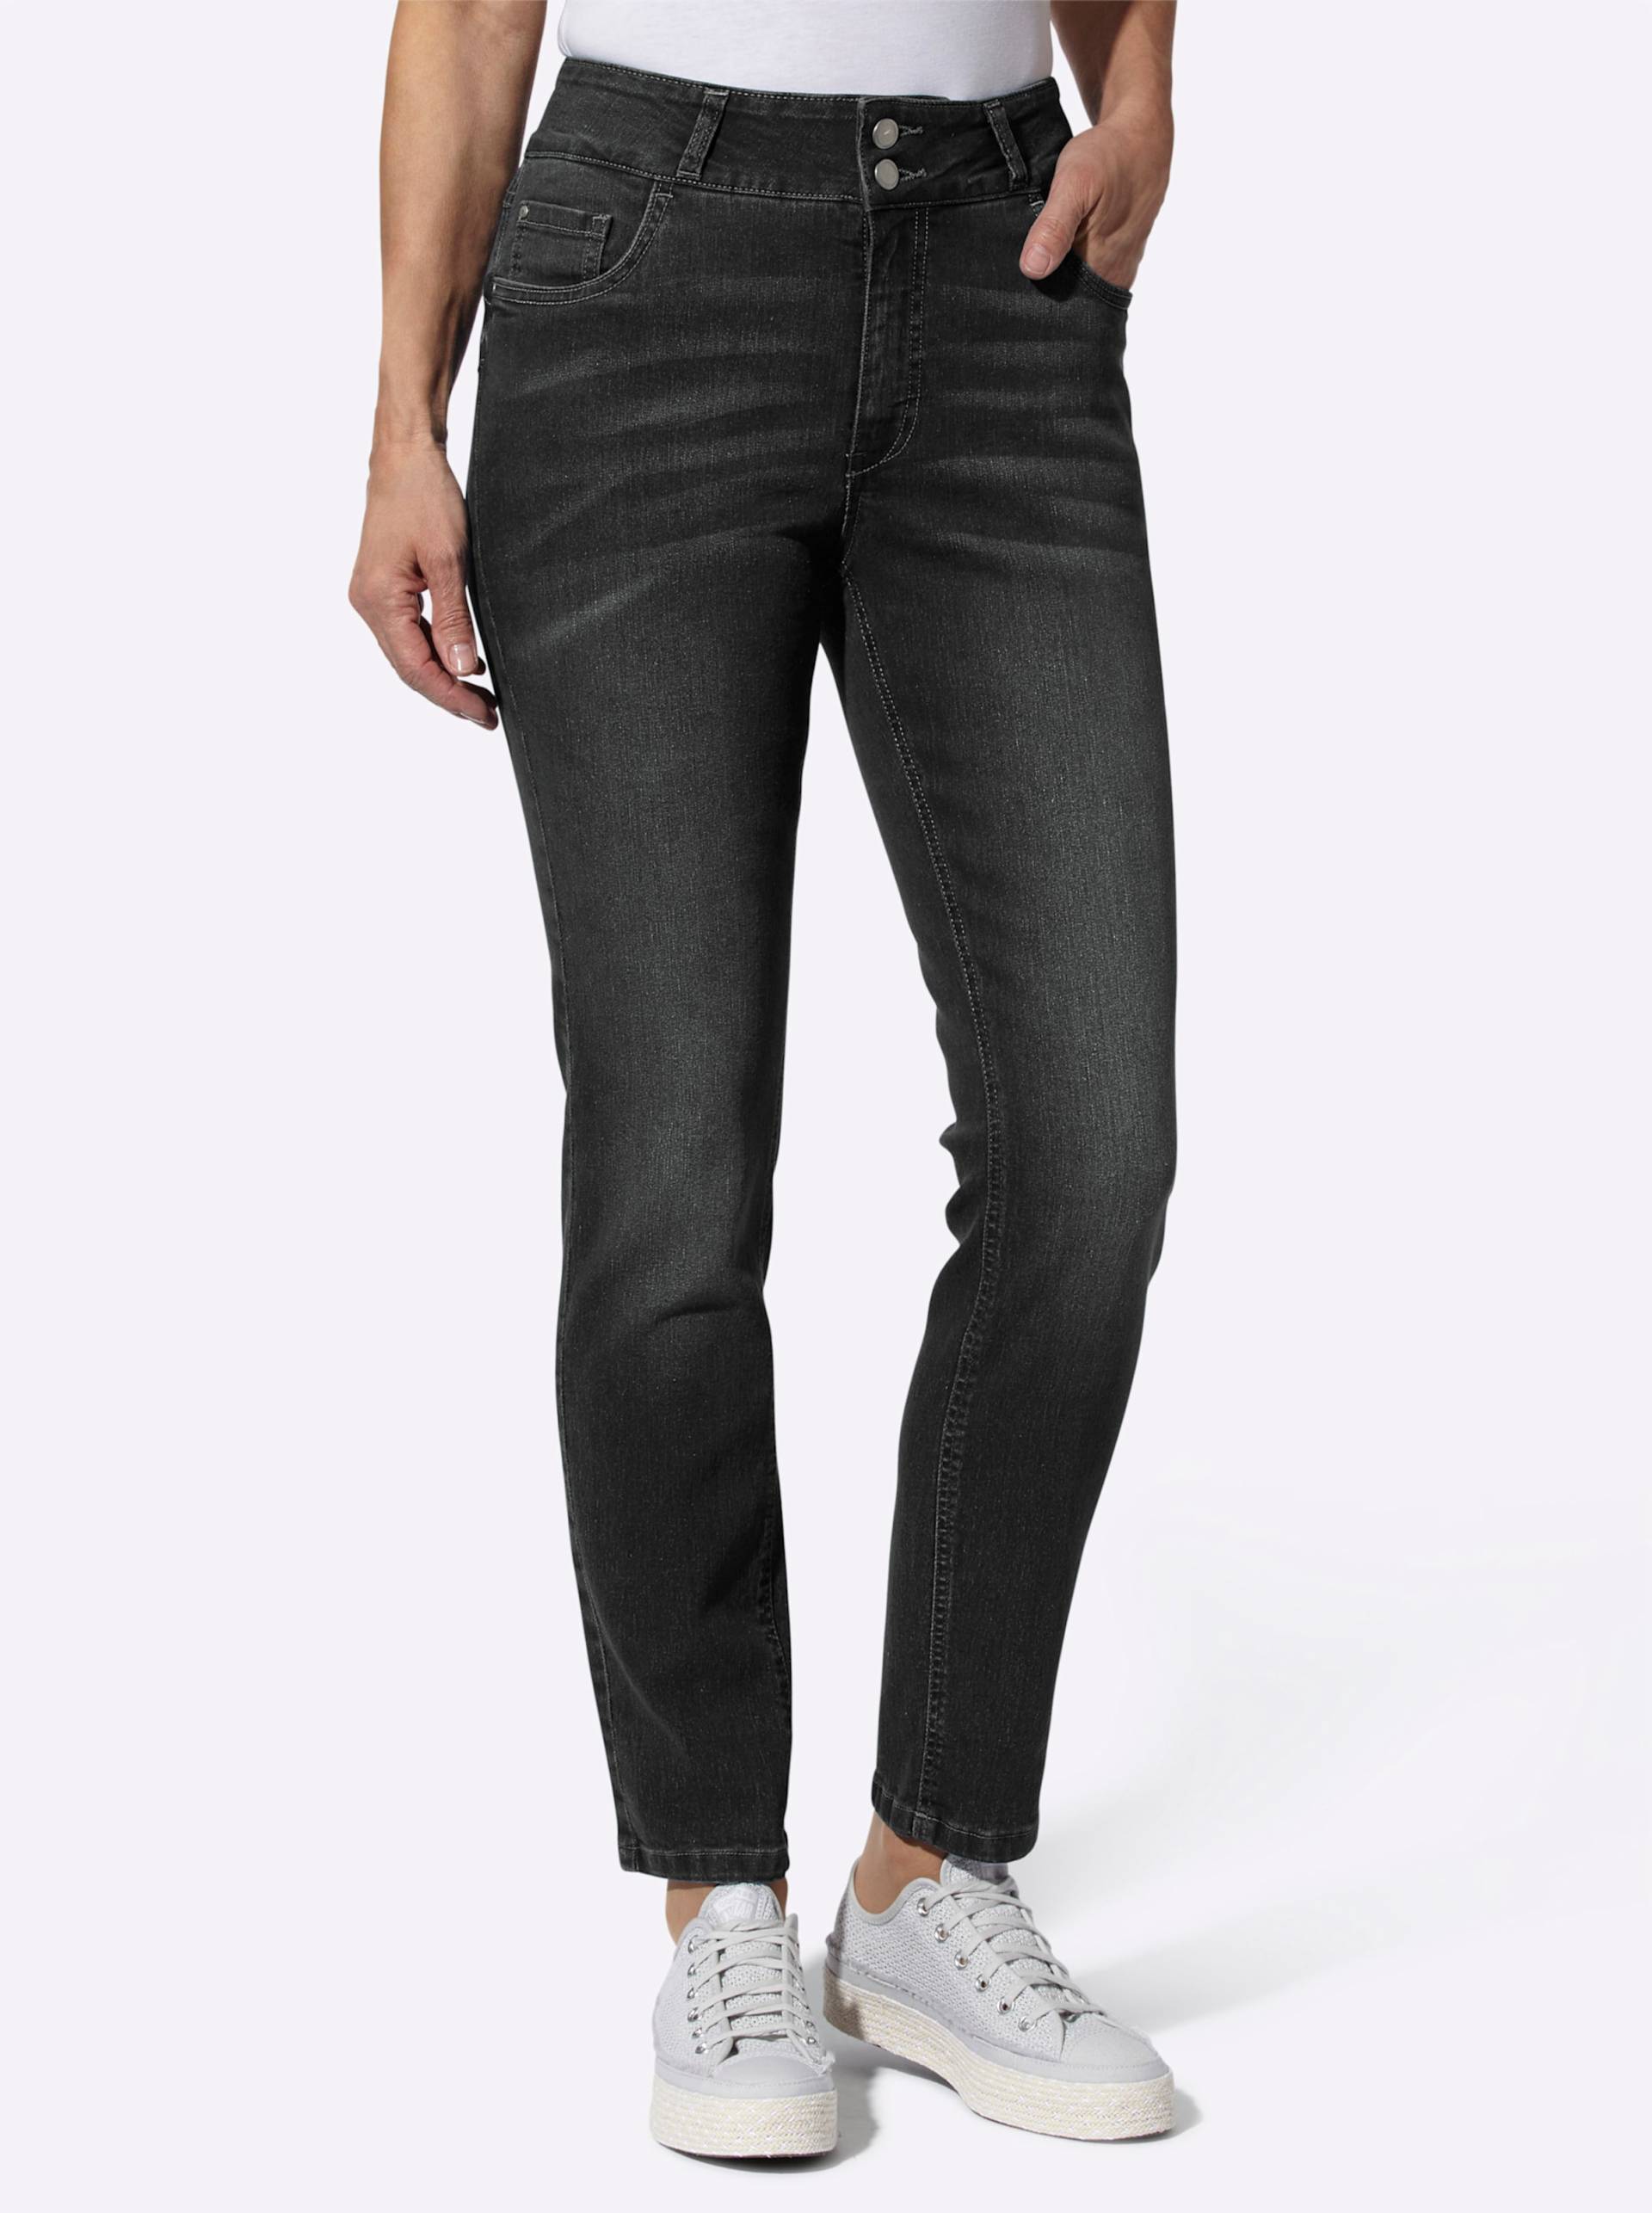 Jeans in graphit-denim von heine